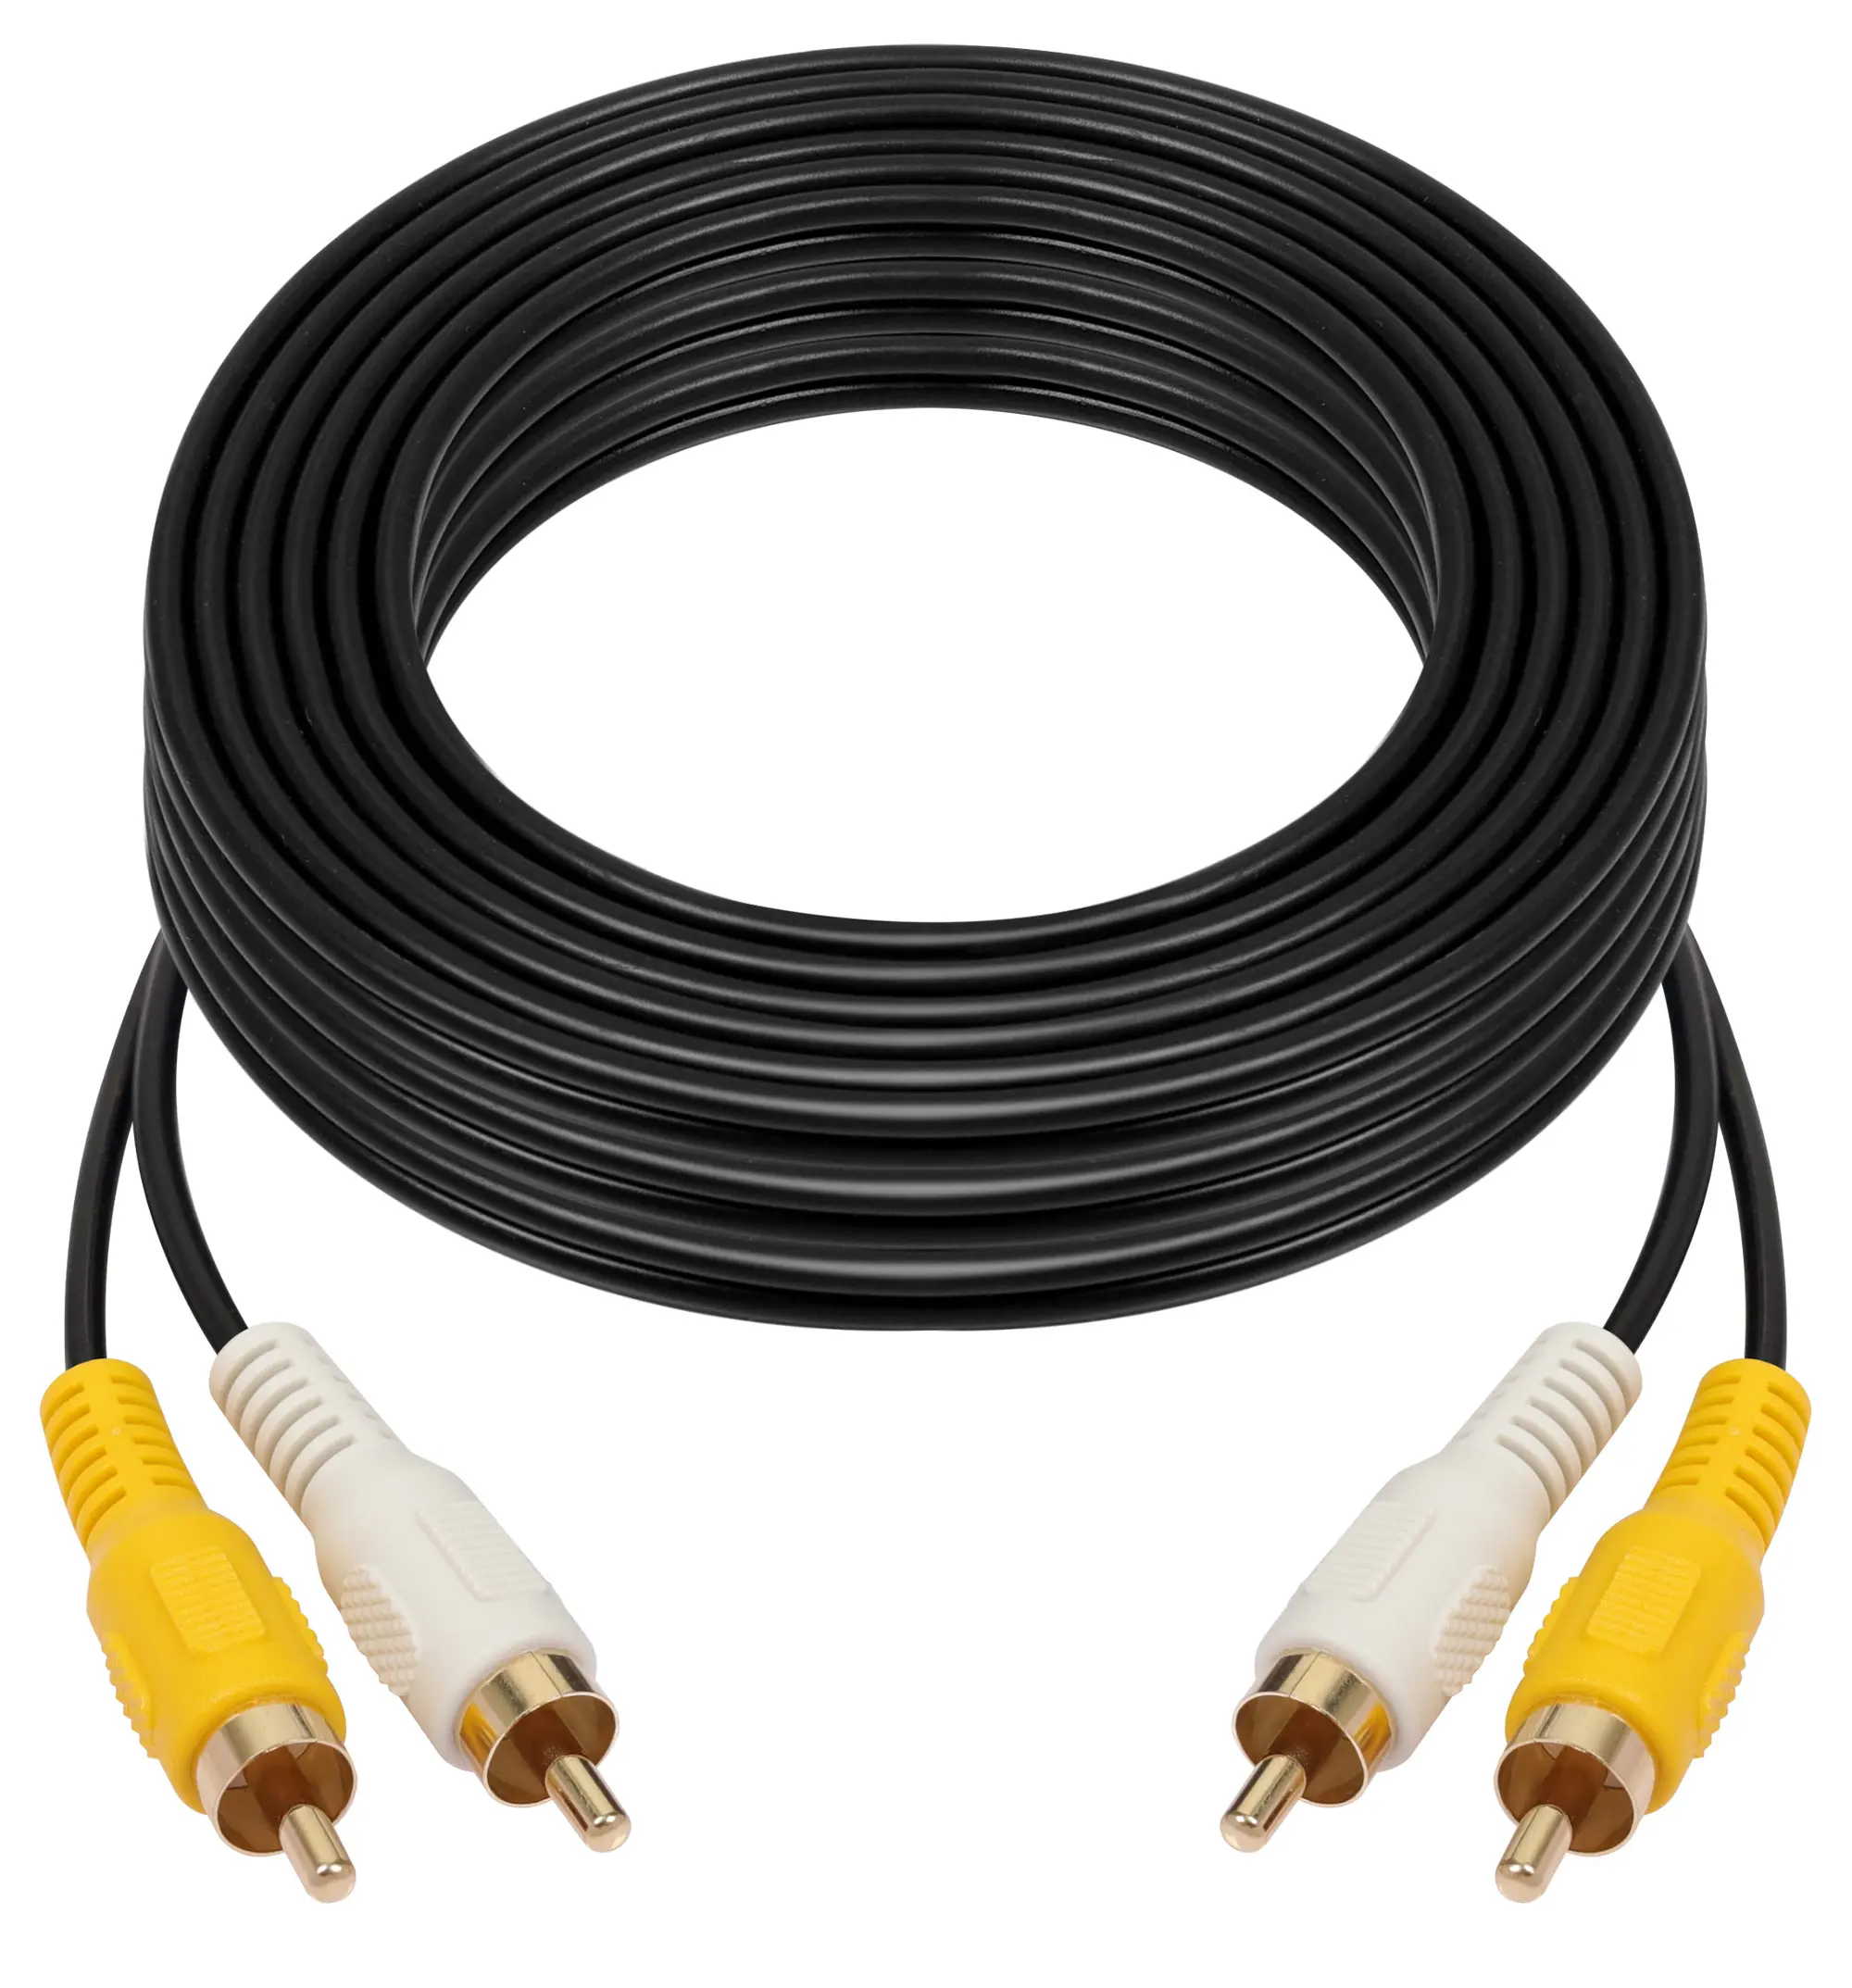 Cable de extensión RCA Audio Video macho a macho, adecuado para sistemas de monitoreo de vehículos, sistemas CCTV y equipos audiovisuales